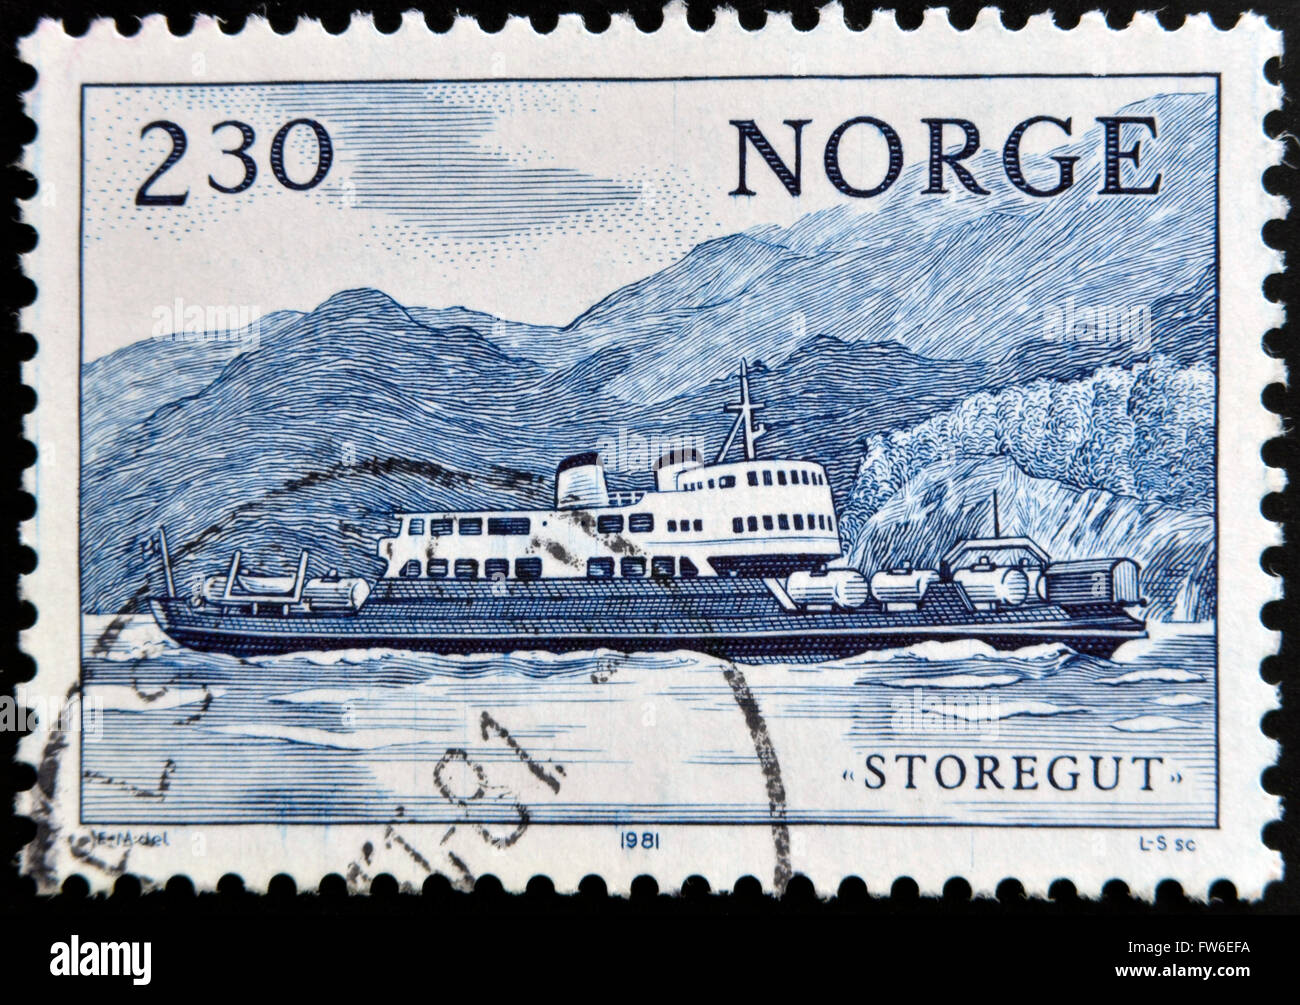 Norvège - circa 1981 : timbre imprimé en Norvège montre ship Storegut, vers 1981 Banque D'Images